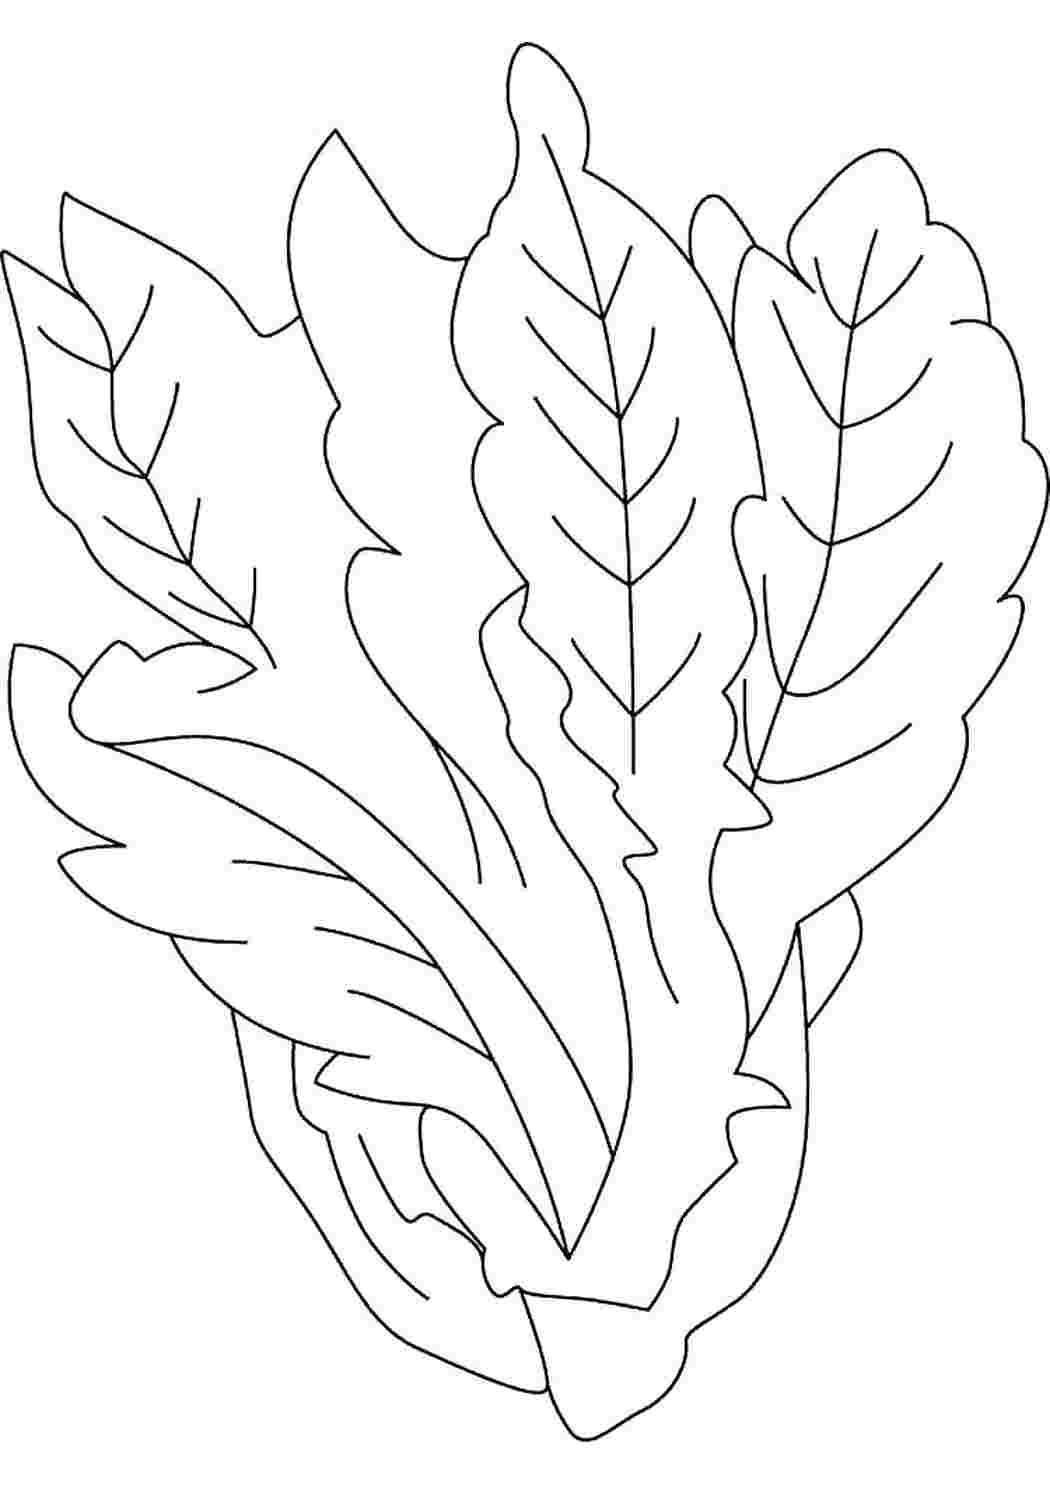 Лист салата раскраска